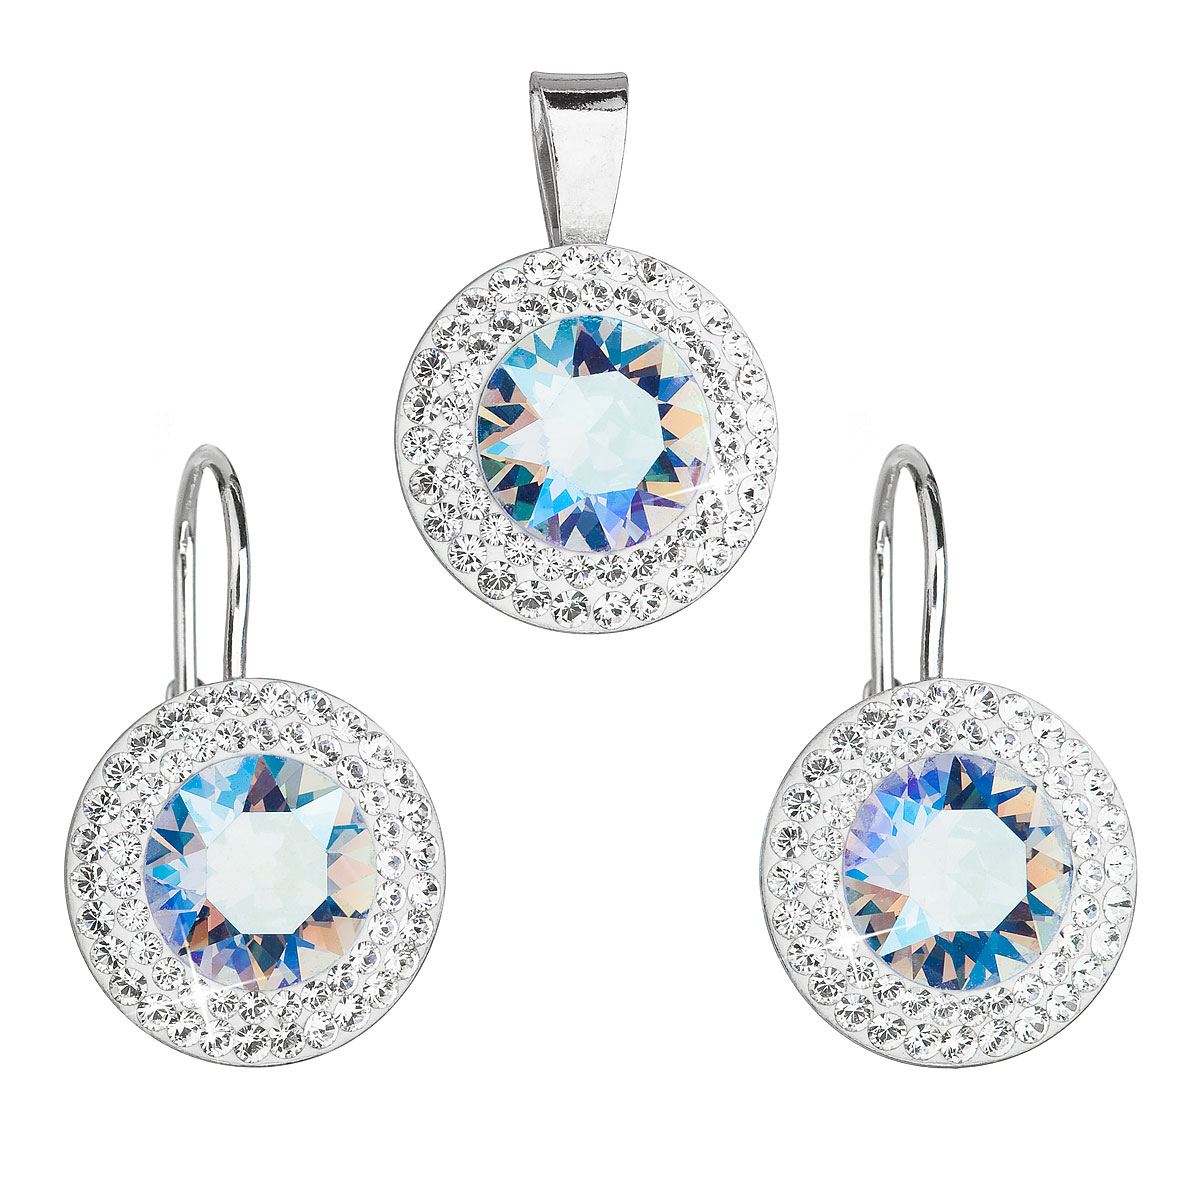 Evolution Group Sada šperků s krystaly Swarovski náušnice a přívěsek modré kulaté 39107.3 light sapphire shimmer